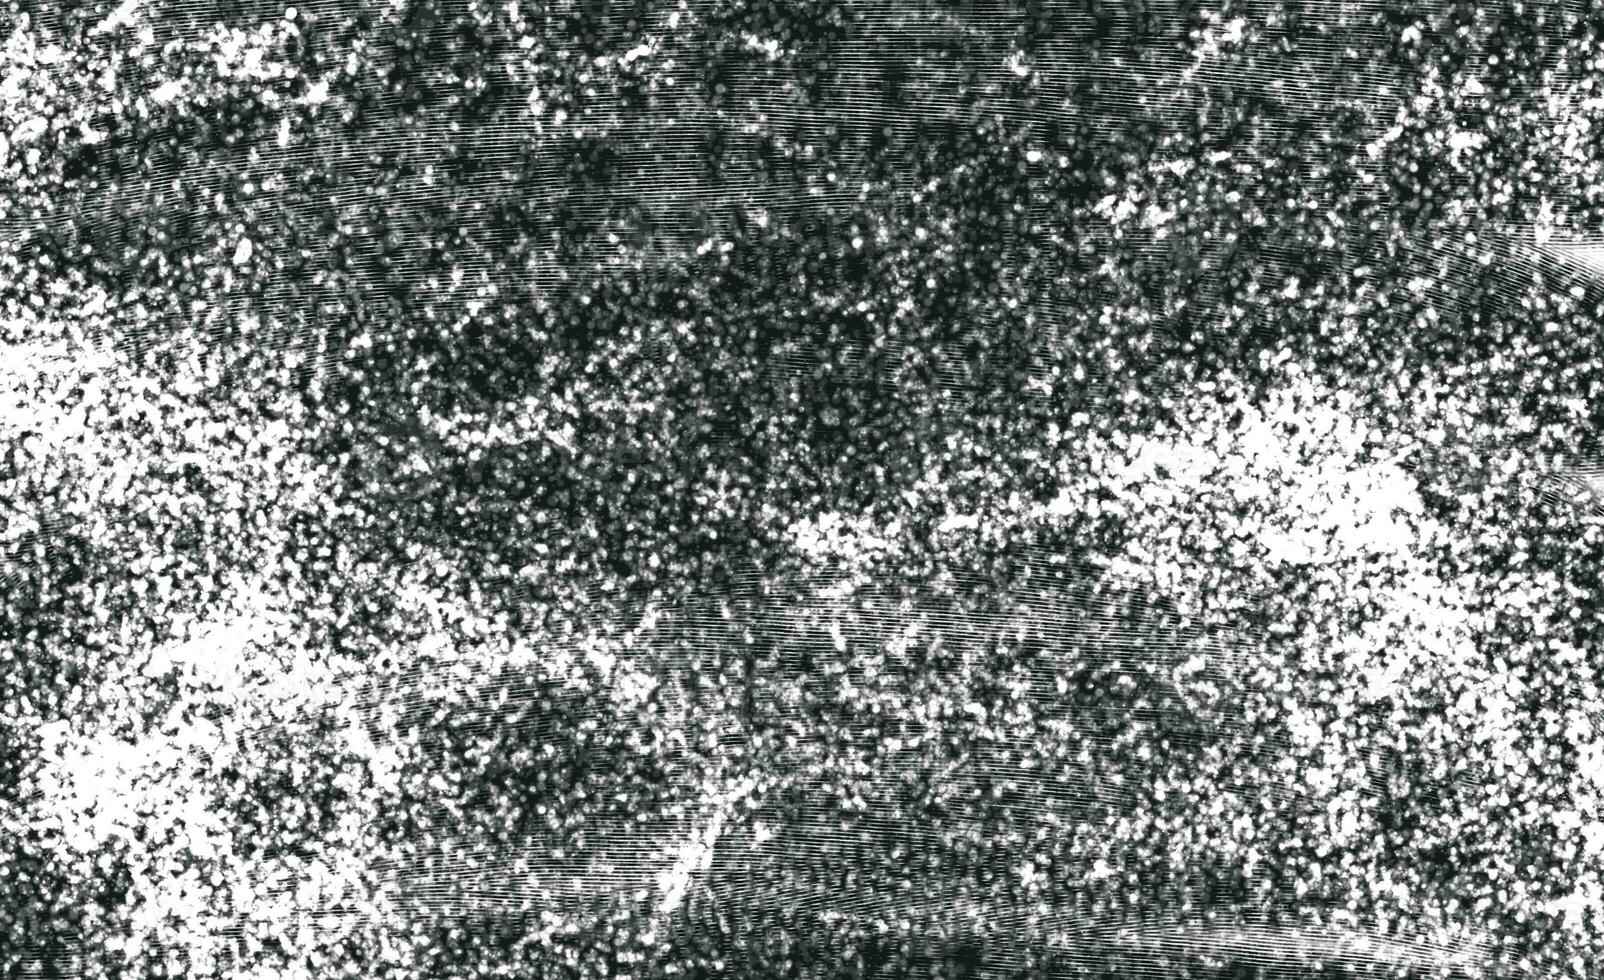 texture de détresse grunge noir et blanc. grain de détresse superposé à la poussière, placez simplement l'illustration sur n'importe quel objet pour créer un effet grungy. photo